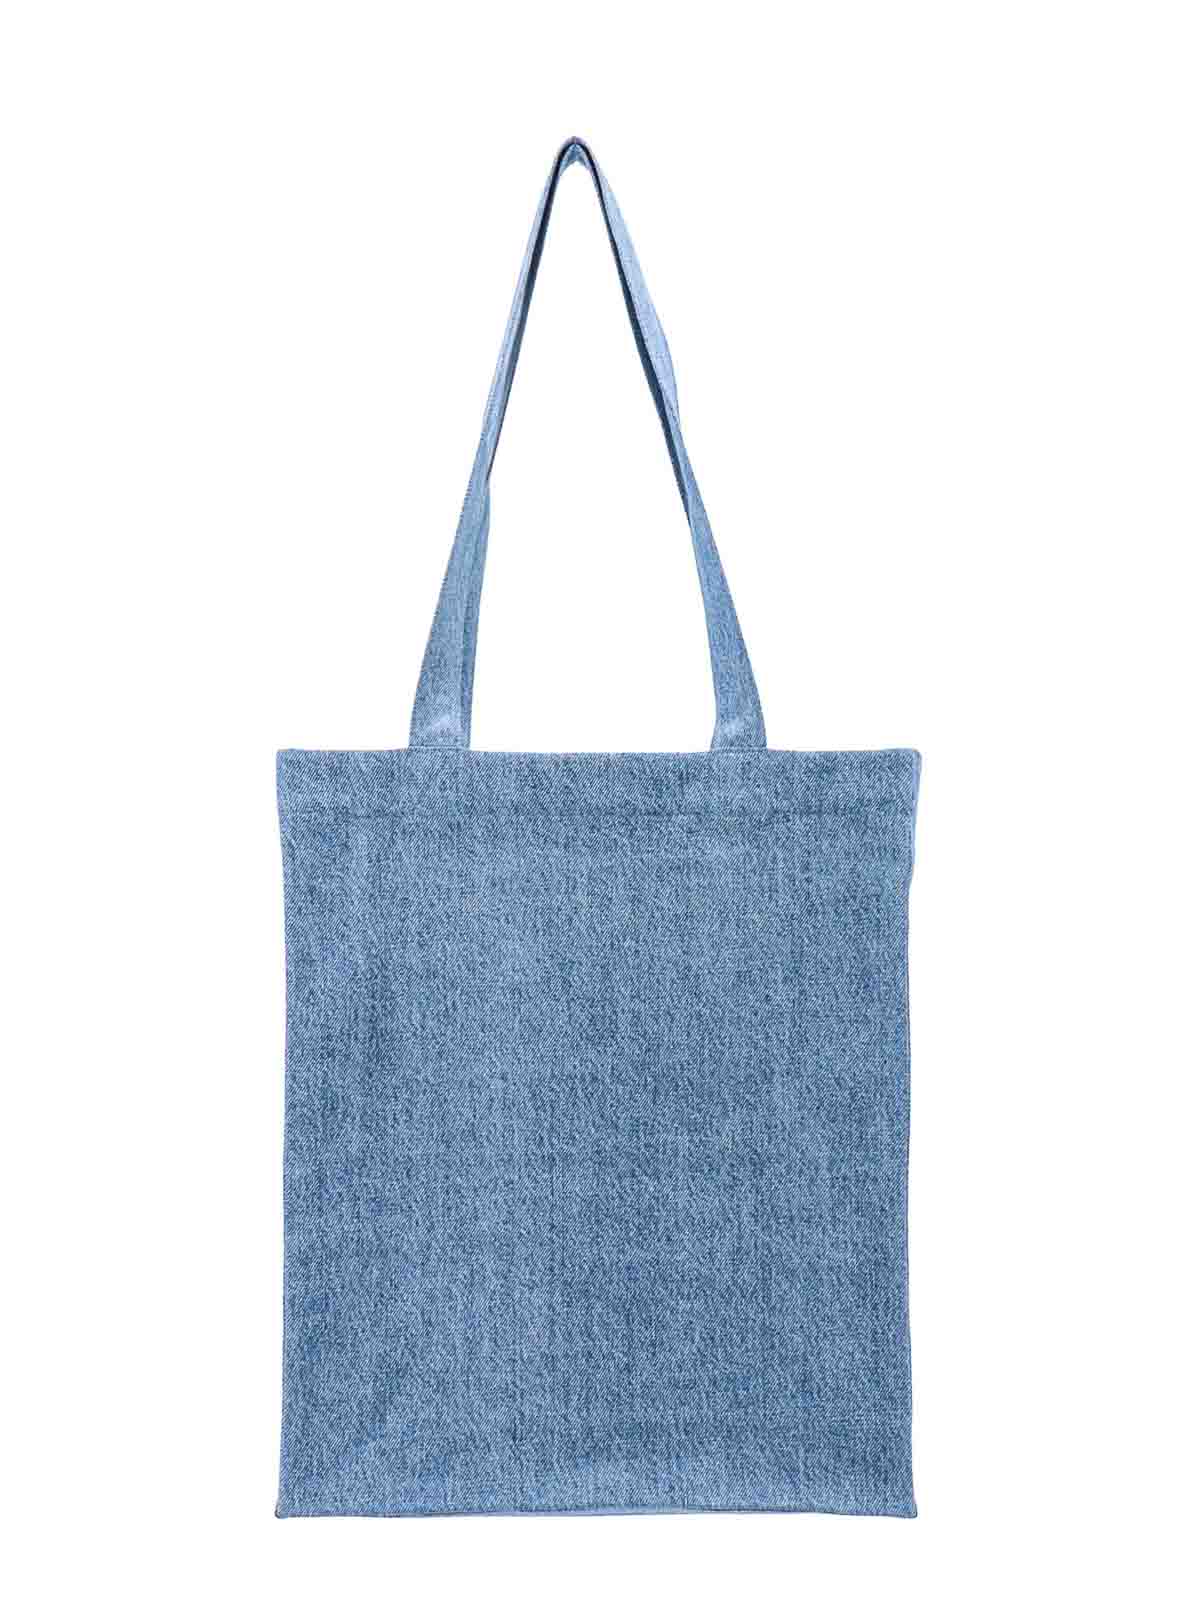 Shop Apc Denim Shoulder Bag With Logo On The Front In Blue